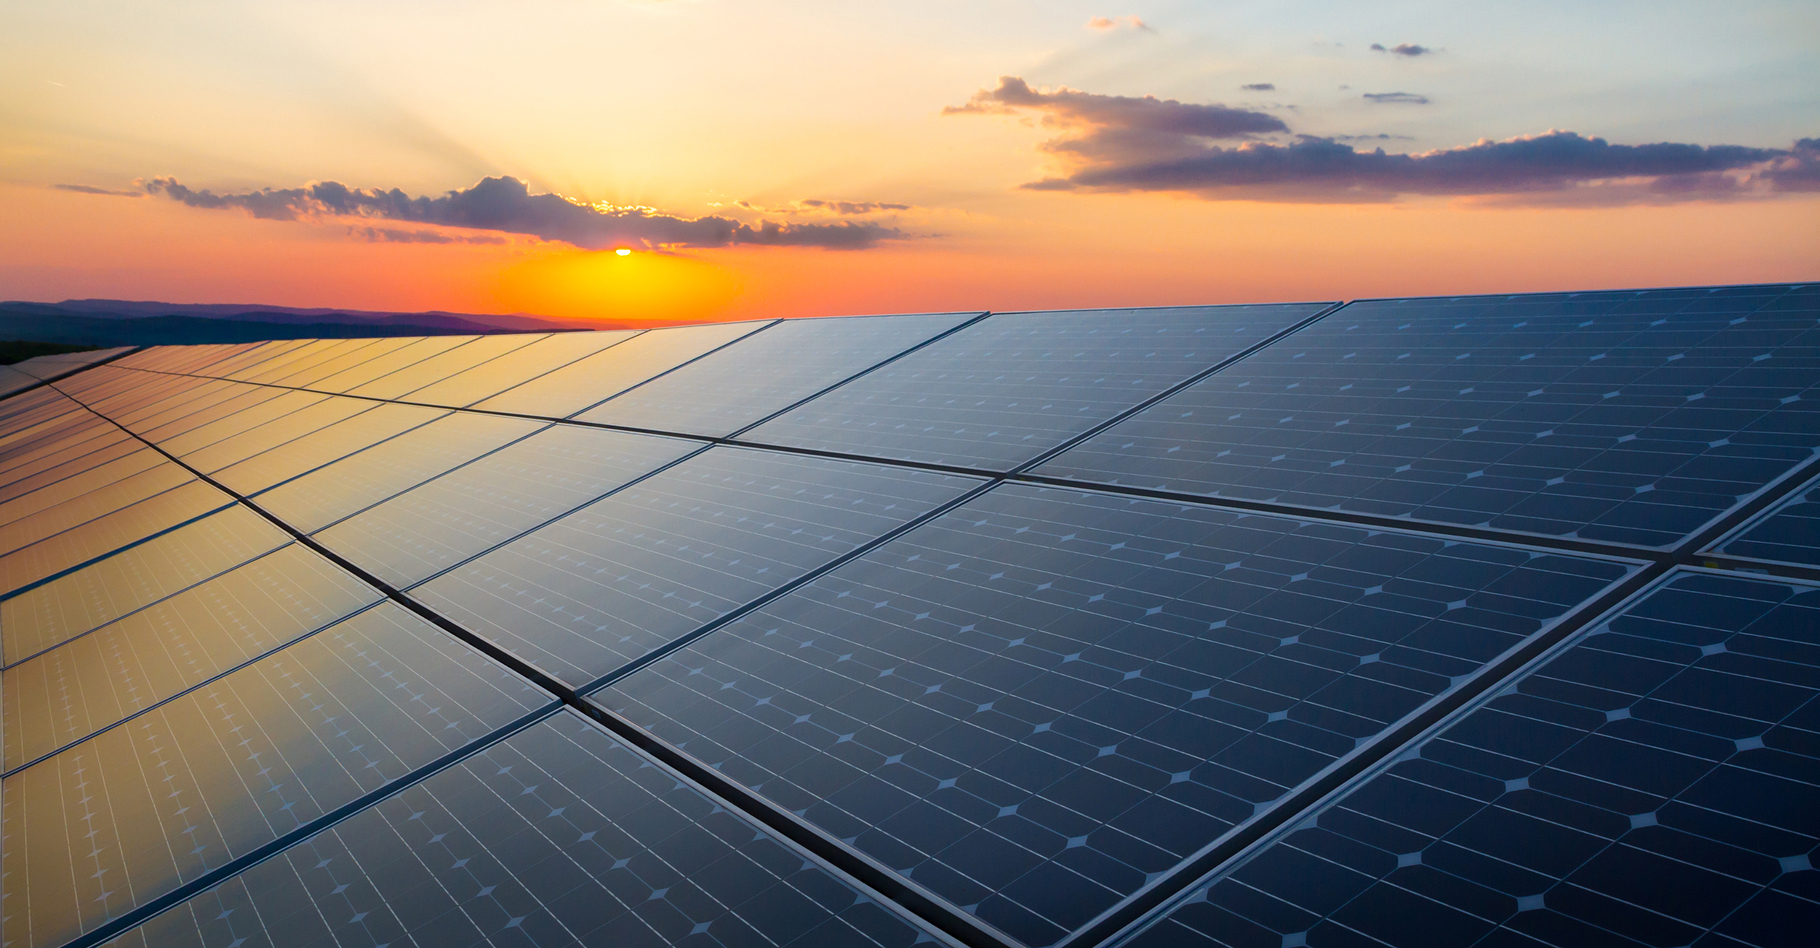 Des chercheurs du MIT et du Masdar Institute proposent des cellules solaires dont l’efficacité serait économiquement intéressante. Entre les cellules&nbsp;photovoltaïques hyper efficaces, mais réservées à des marchés de niche, et les panneaux solaires grand public, ces nouvelles cellules pourraient bien trouver un nouveau marché. © foxbat, Shutterstock